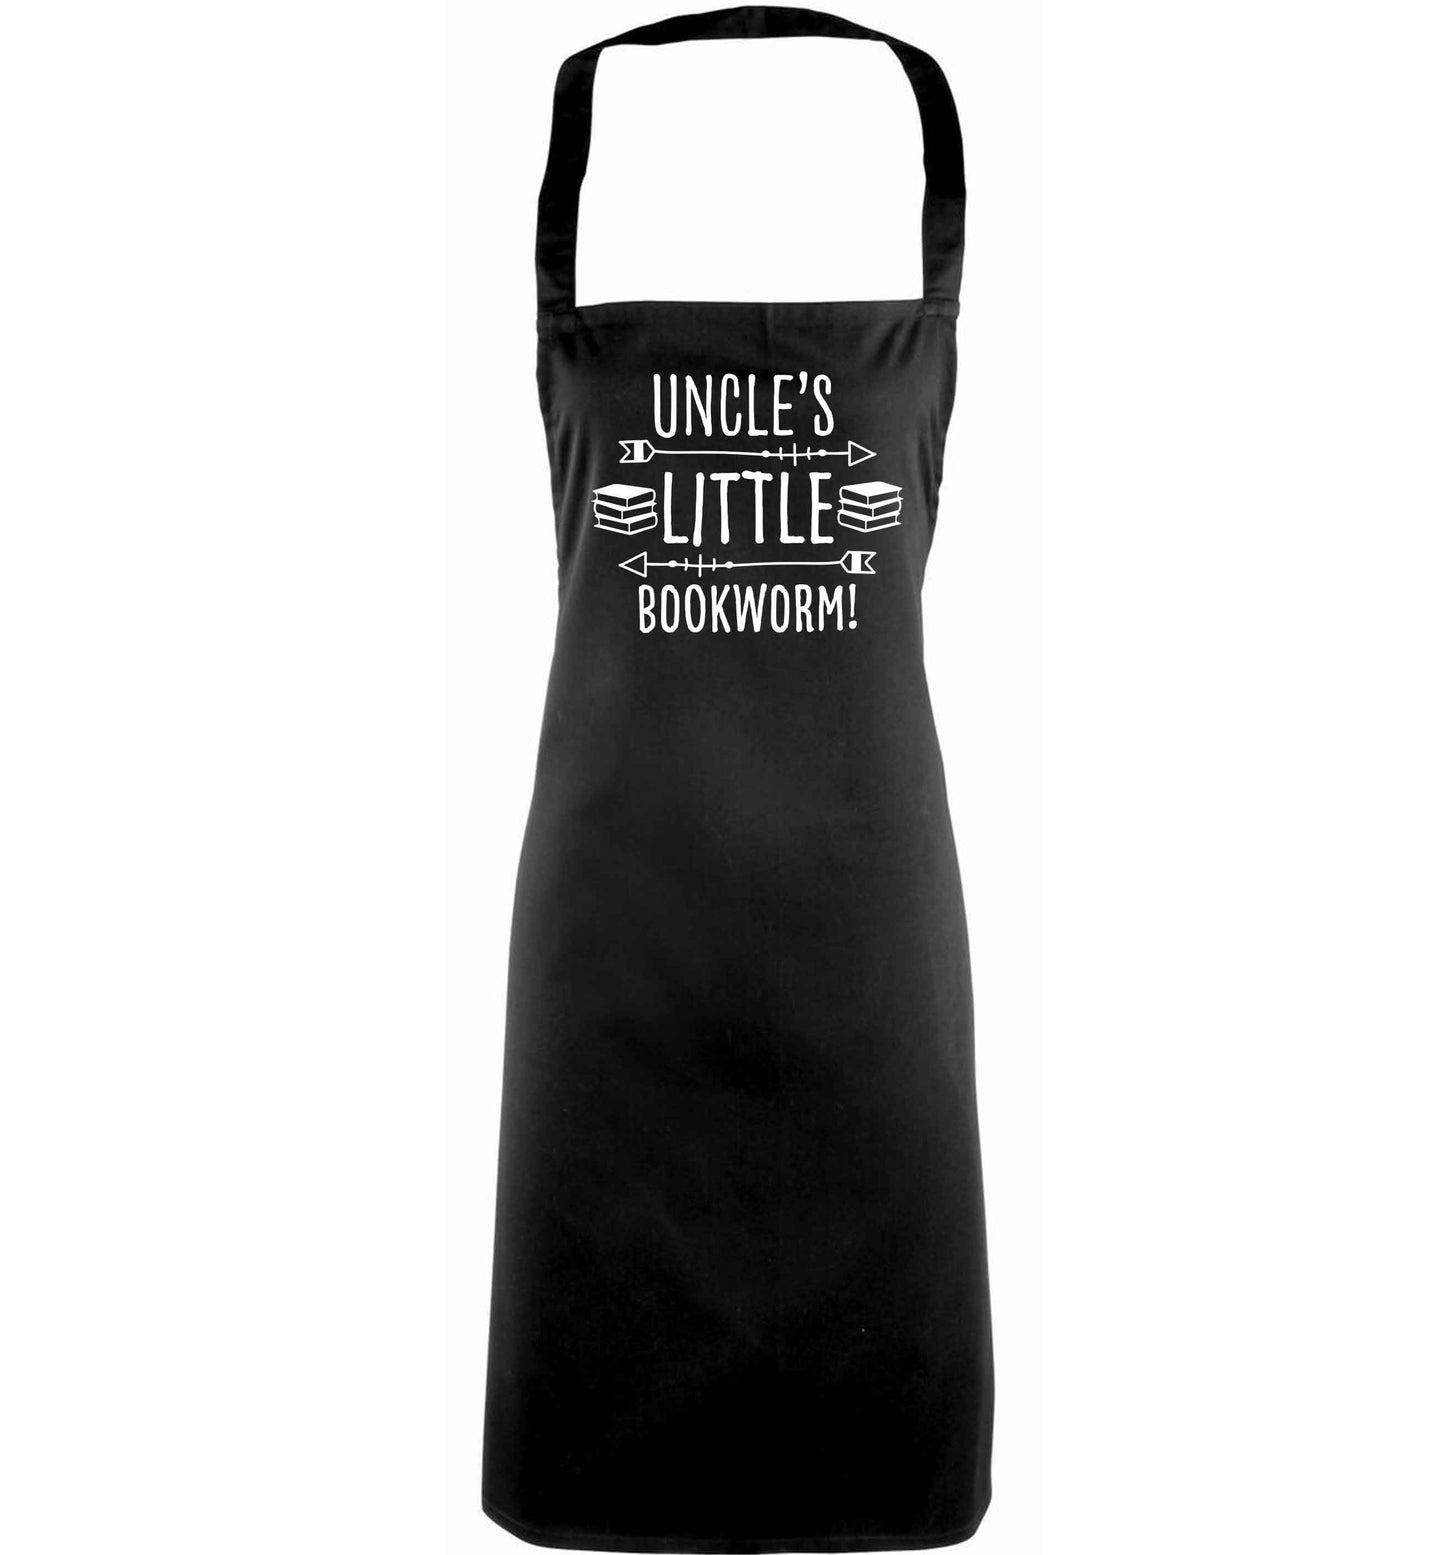 Uncle's little bookworm adults black apron